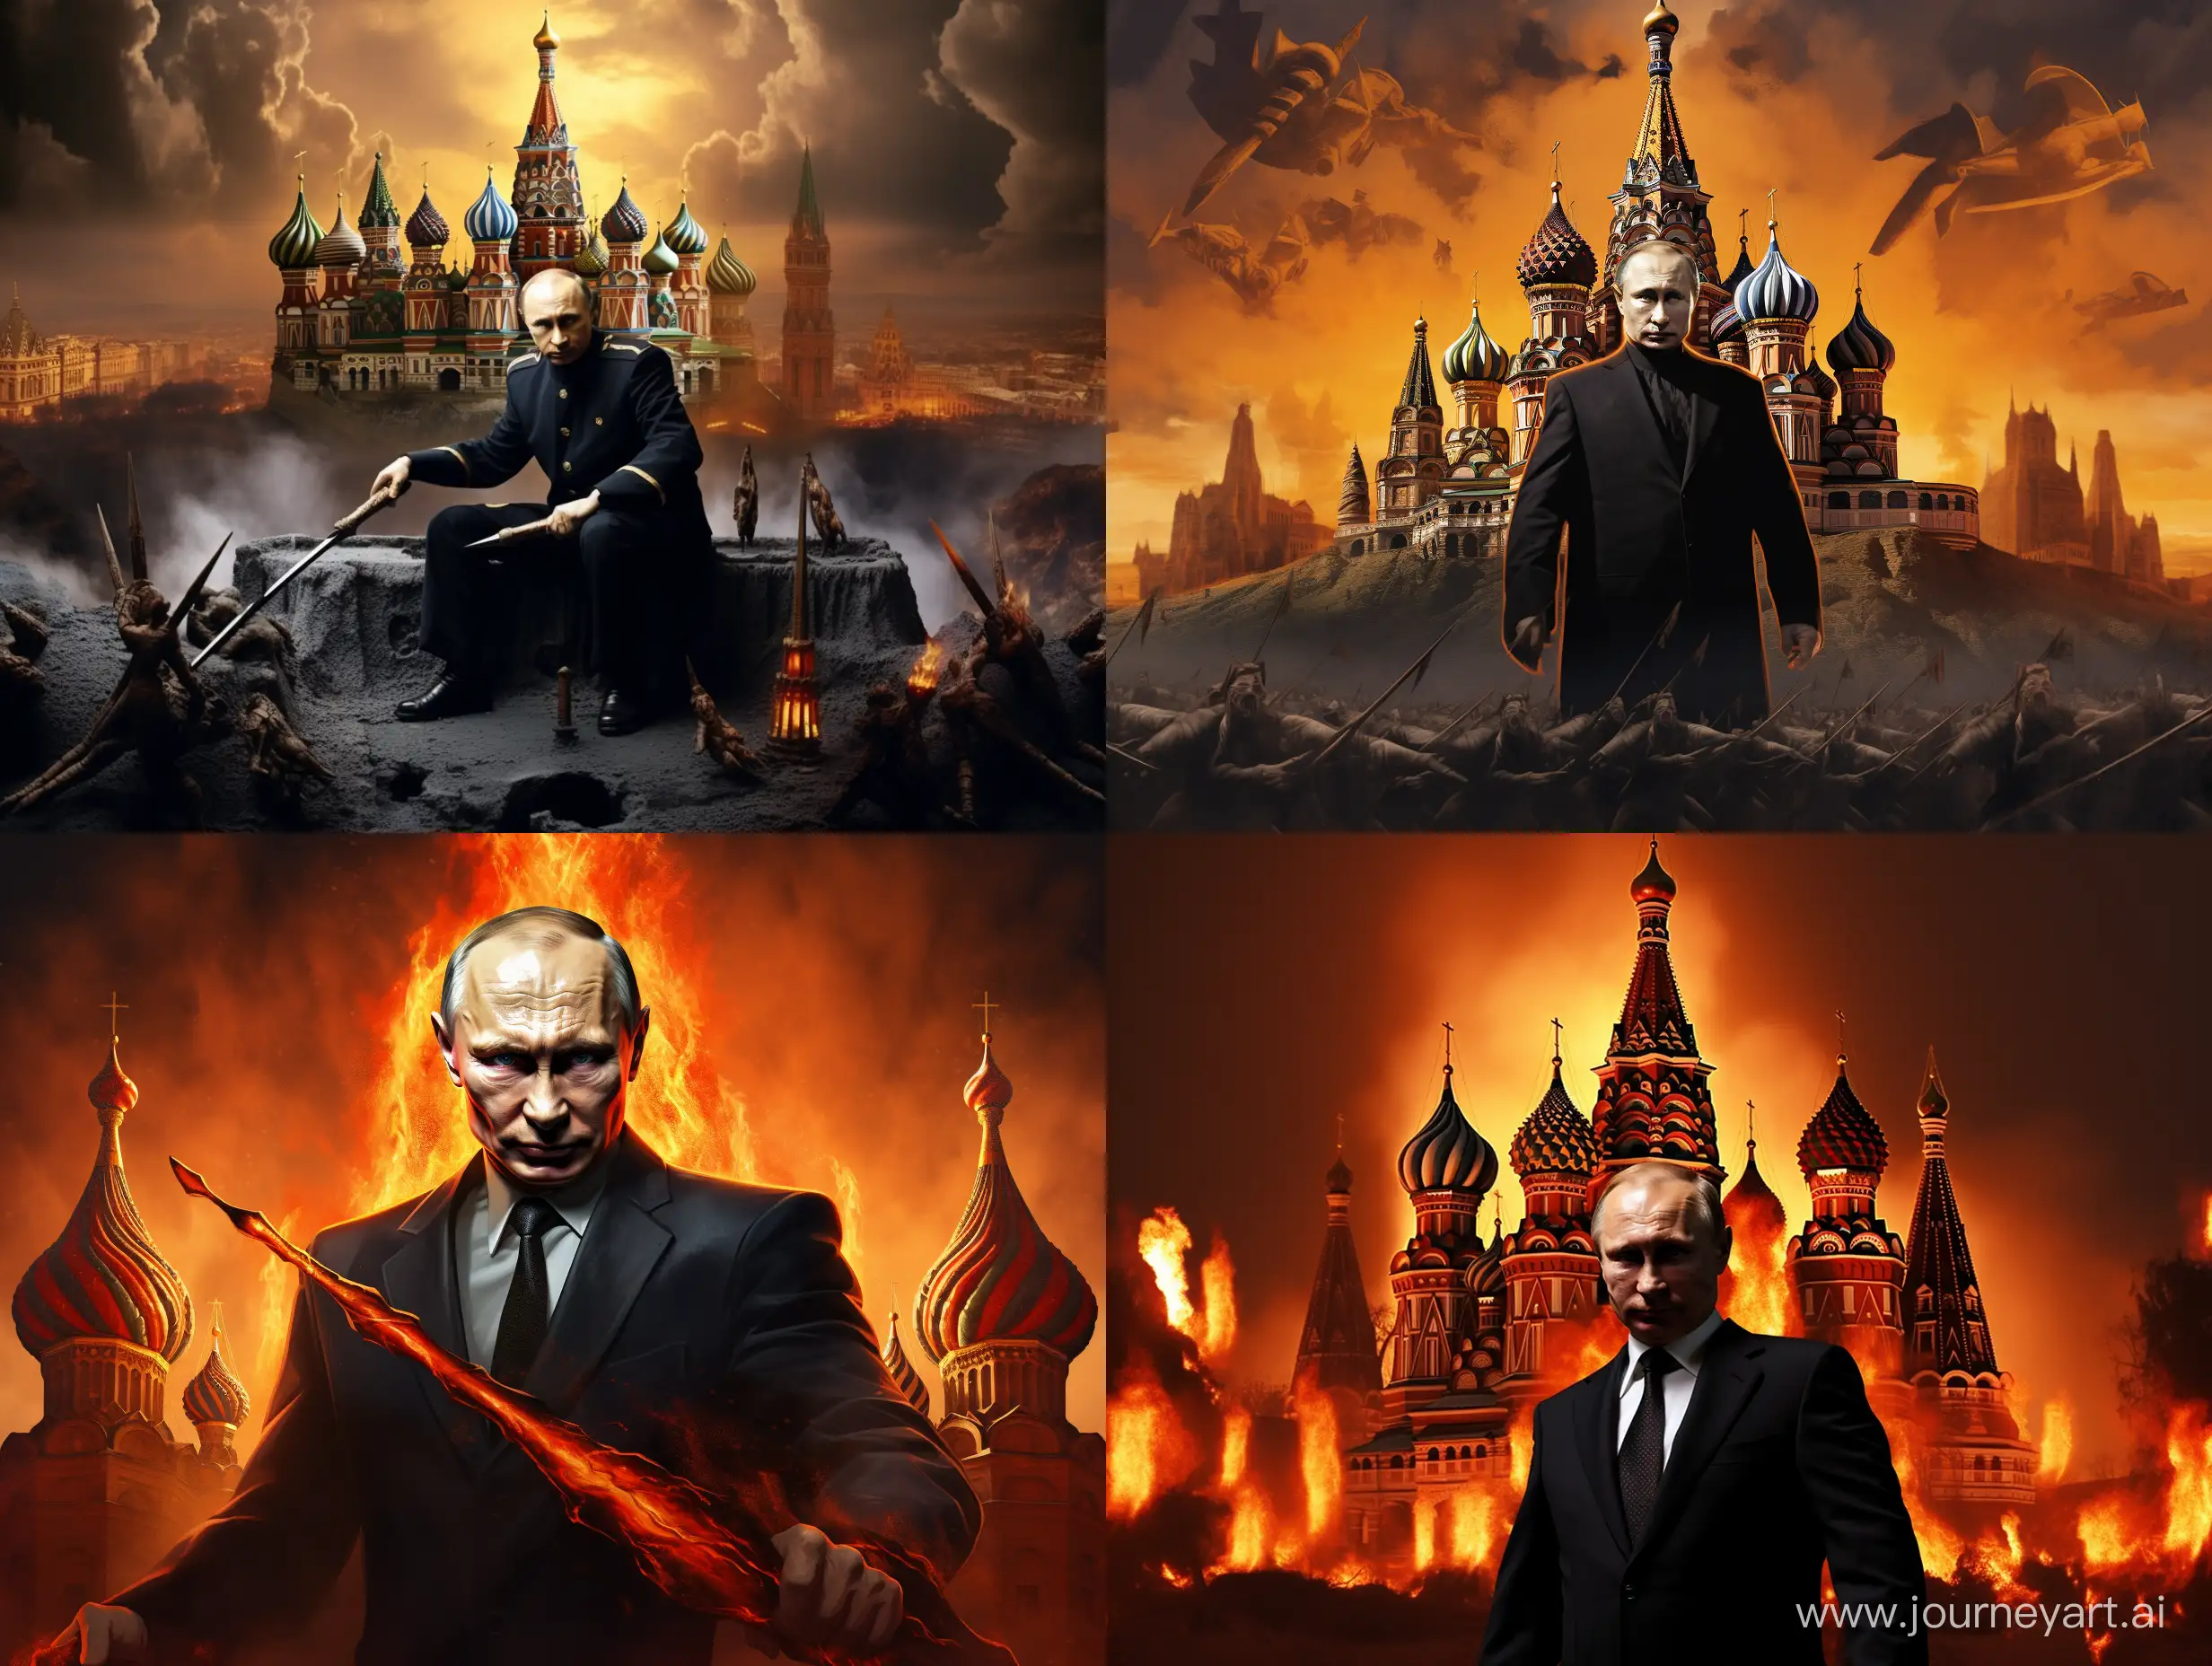 Putin is plotting a villainous plan